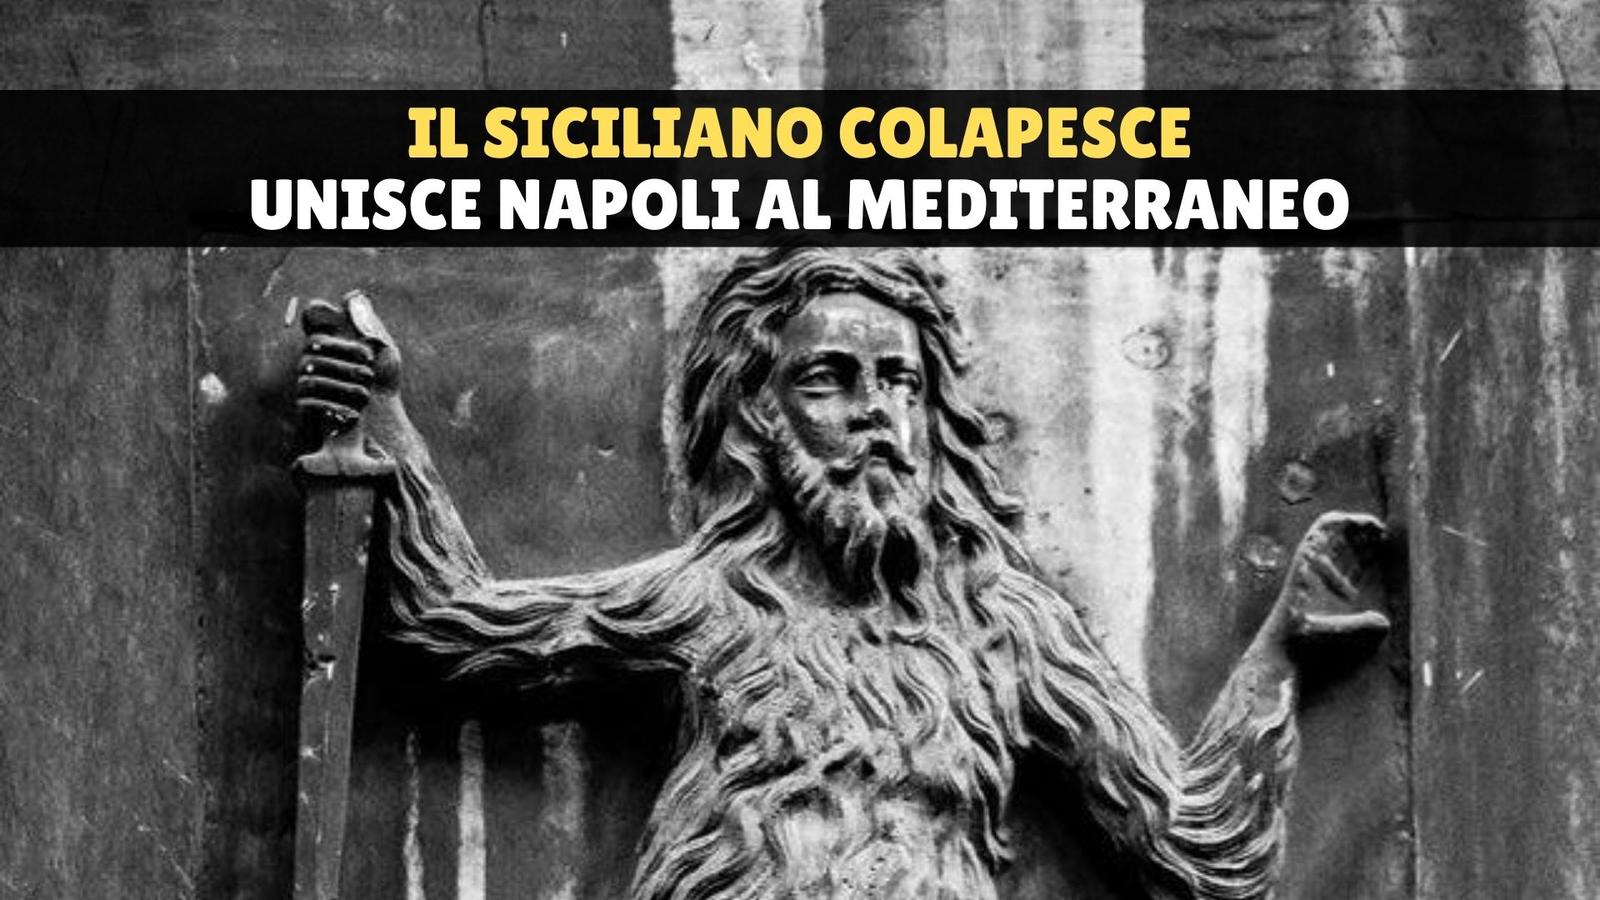 Storia di Colapesce, a Napoli e nel Mediterraneo la leggenda di un antichissimo dio orientale